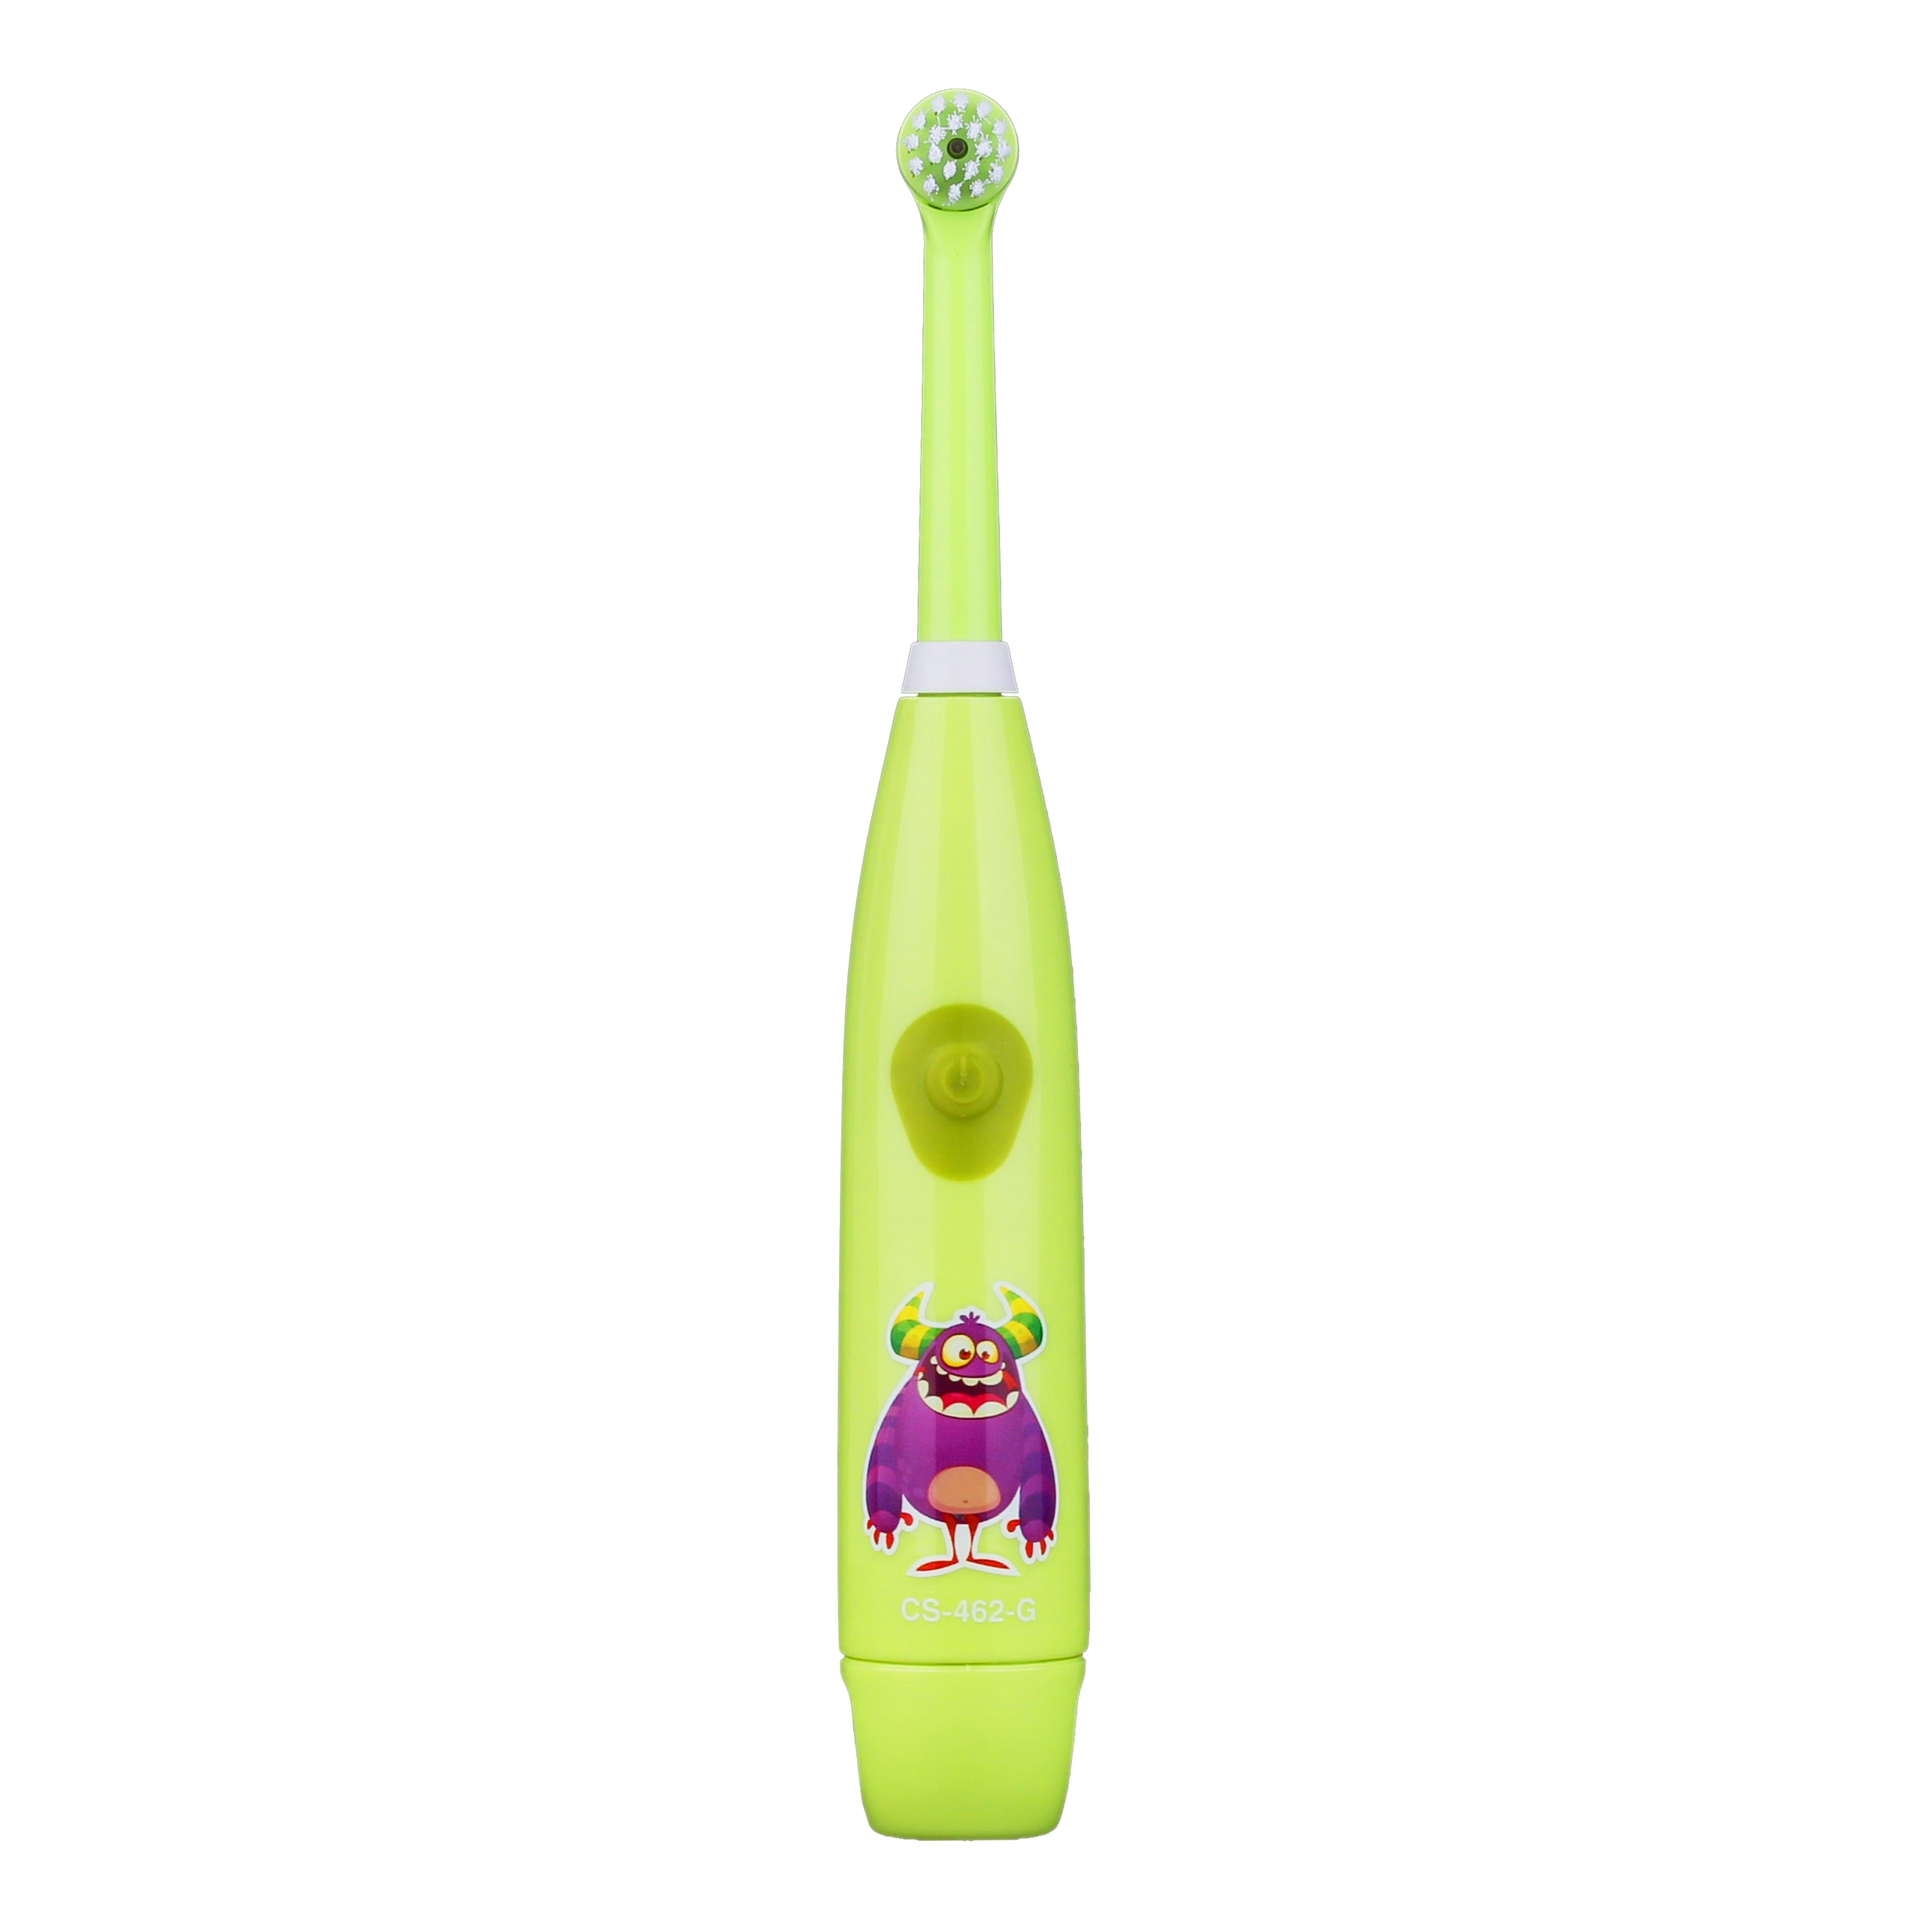 Зубная щетка электрическая Kids CS-462-G зеленая (Си Эс Медика)